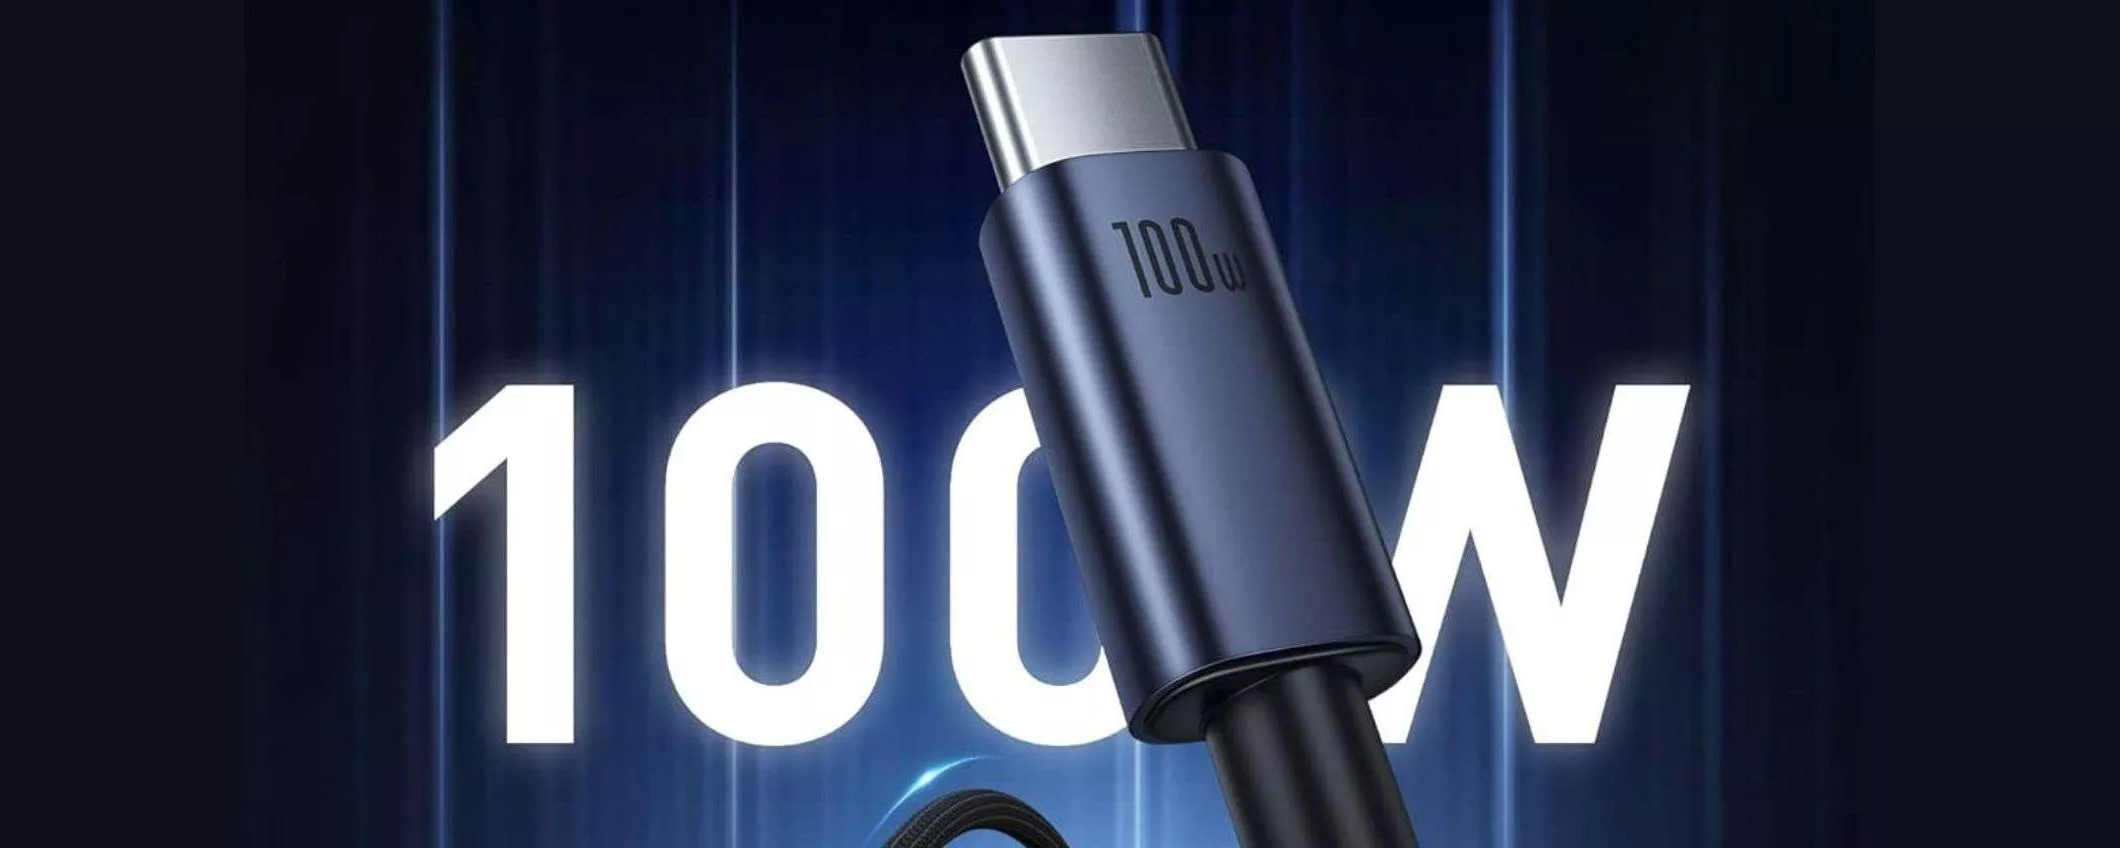 Cavo USB C 100W a 6€ su Amazon: ULTRA POTENTE, mini prezzo